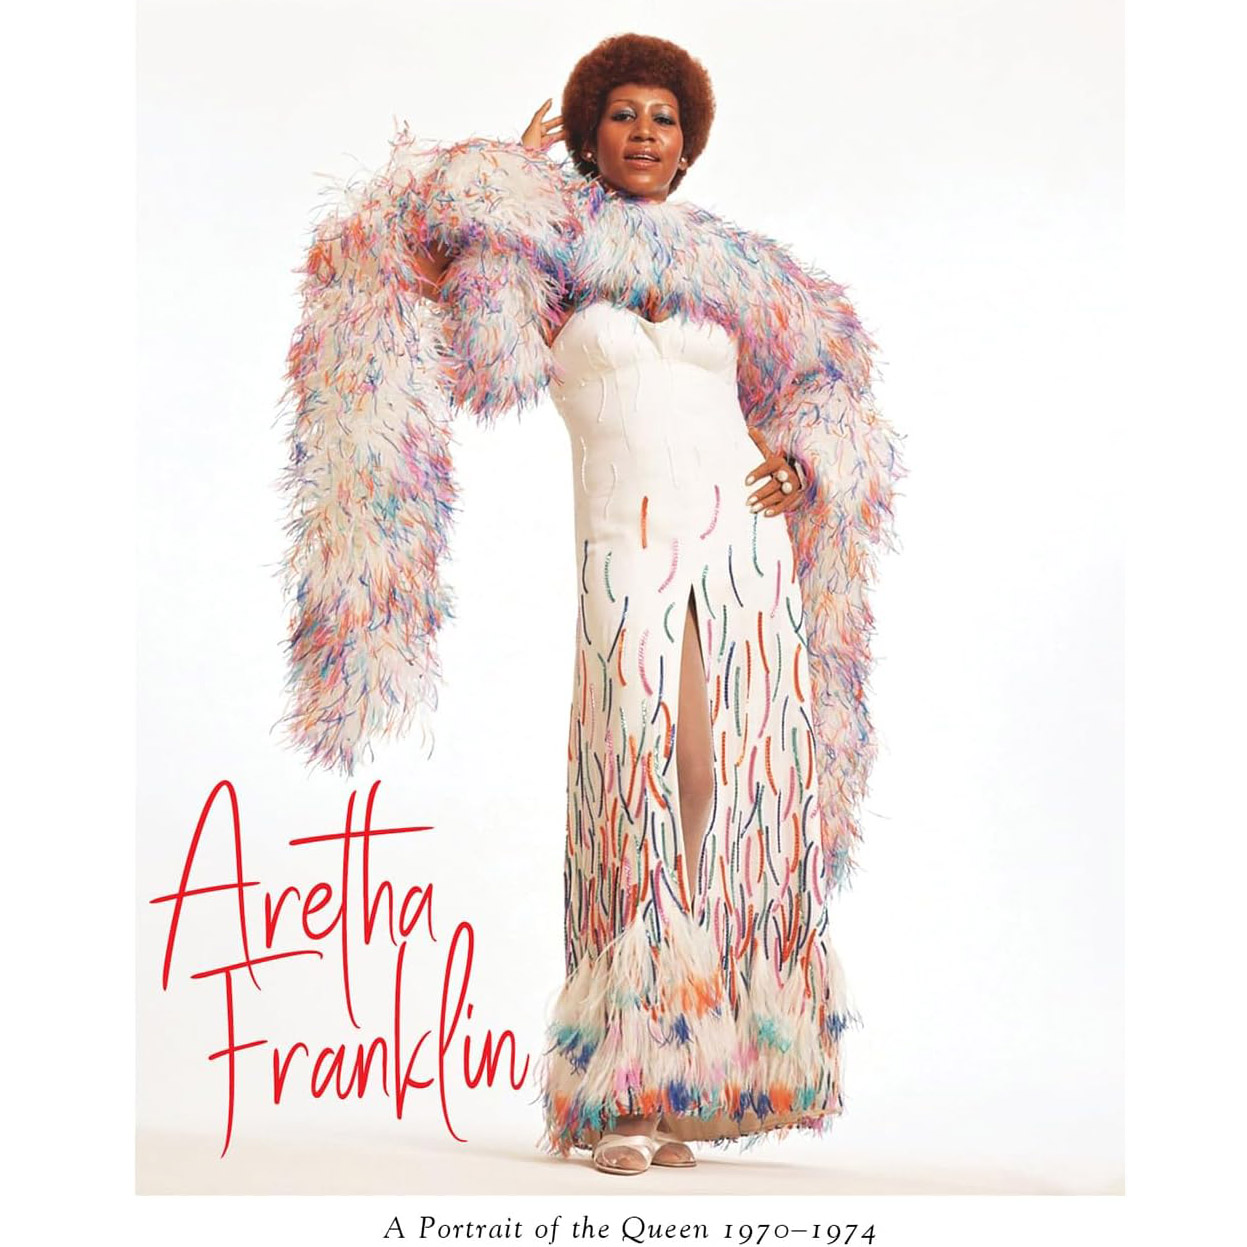 Copertina Vinile 33 giri A Portrait of the Queen 1970-1974 di Aretha Franklin